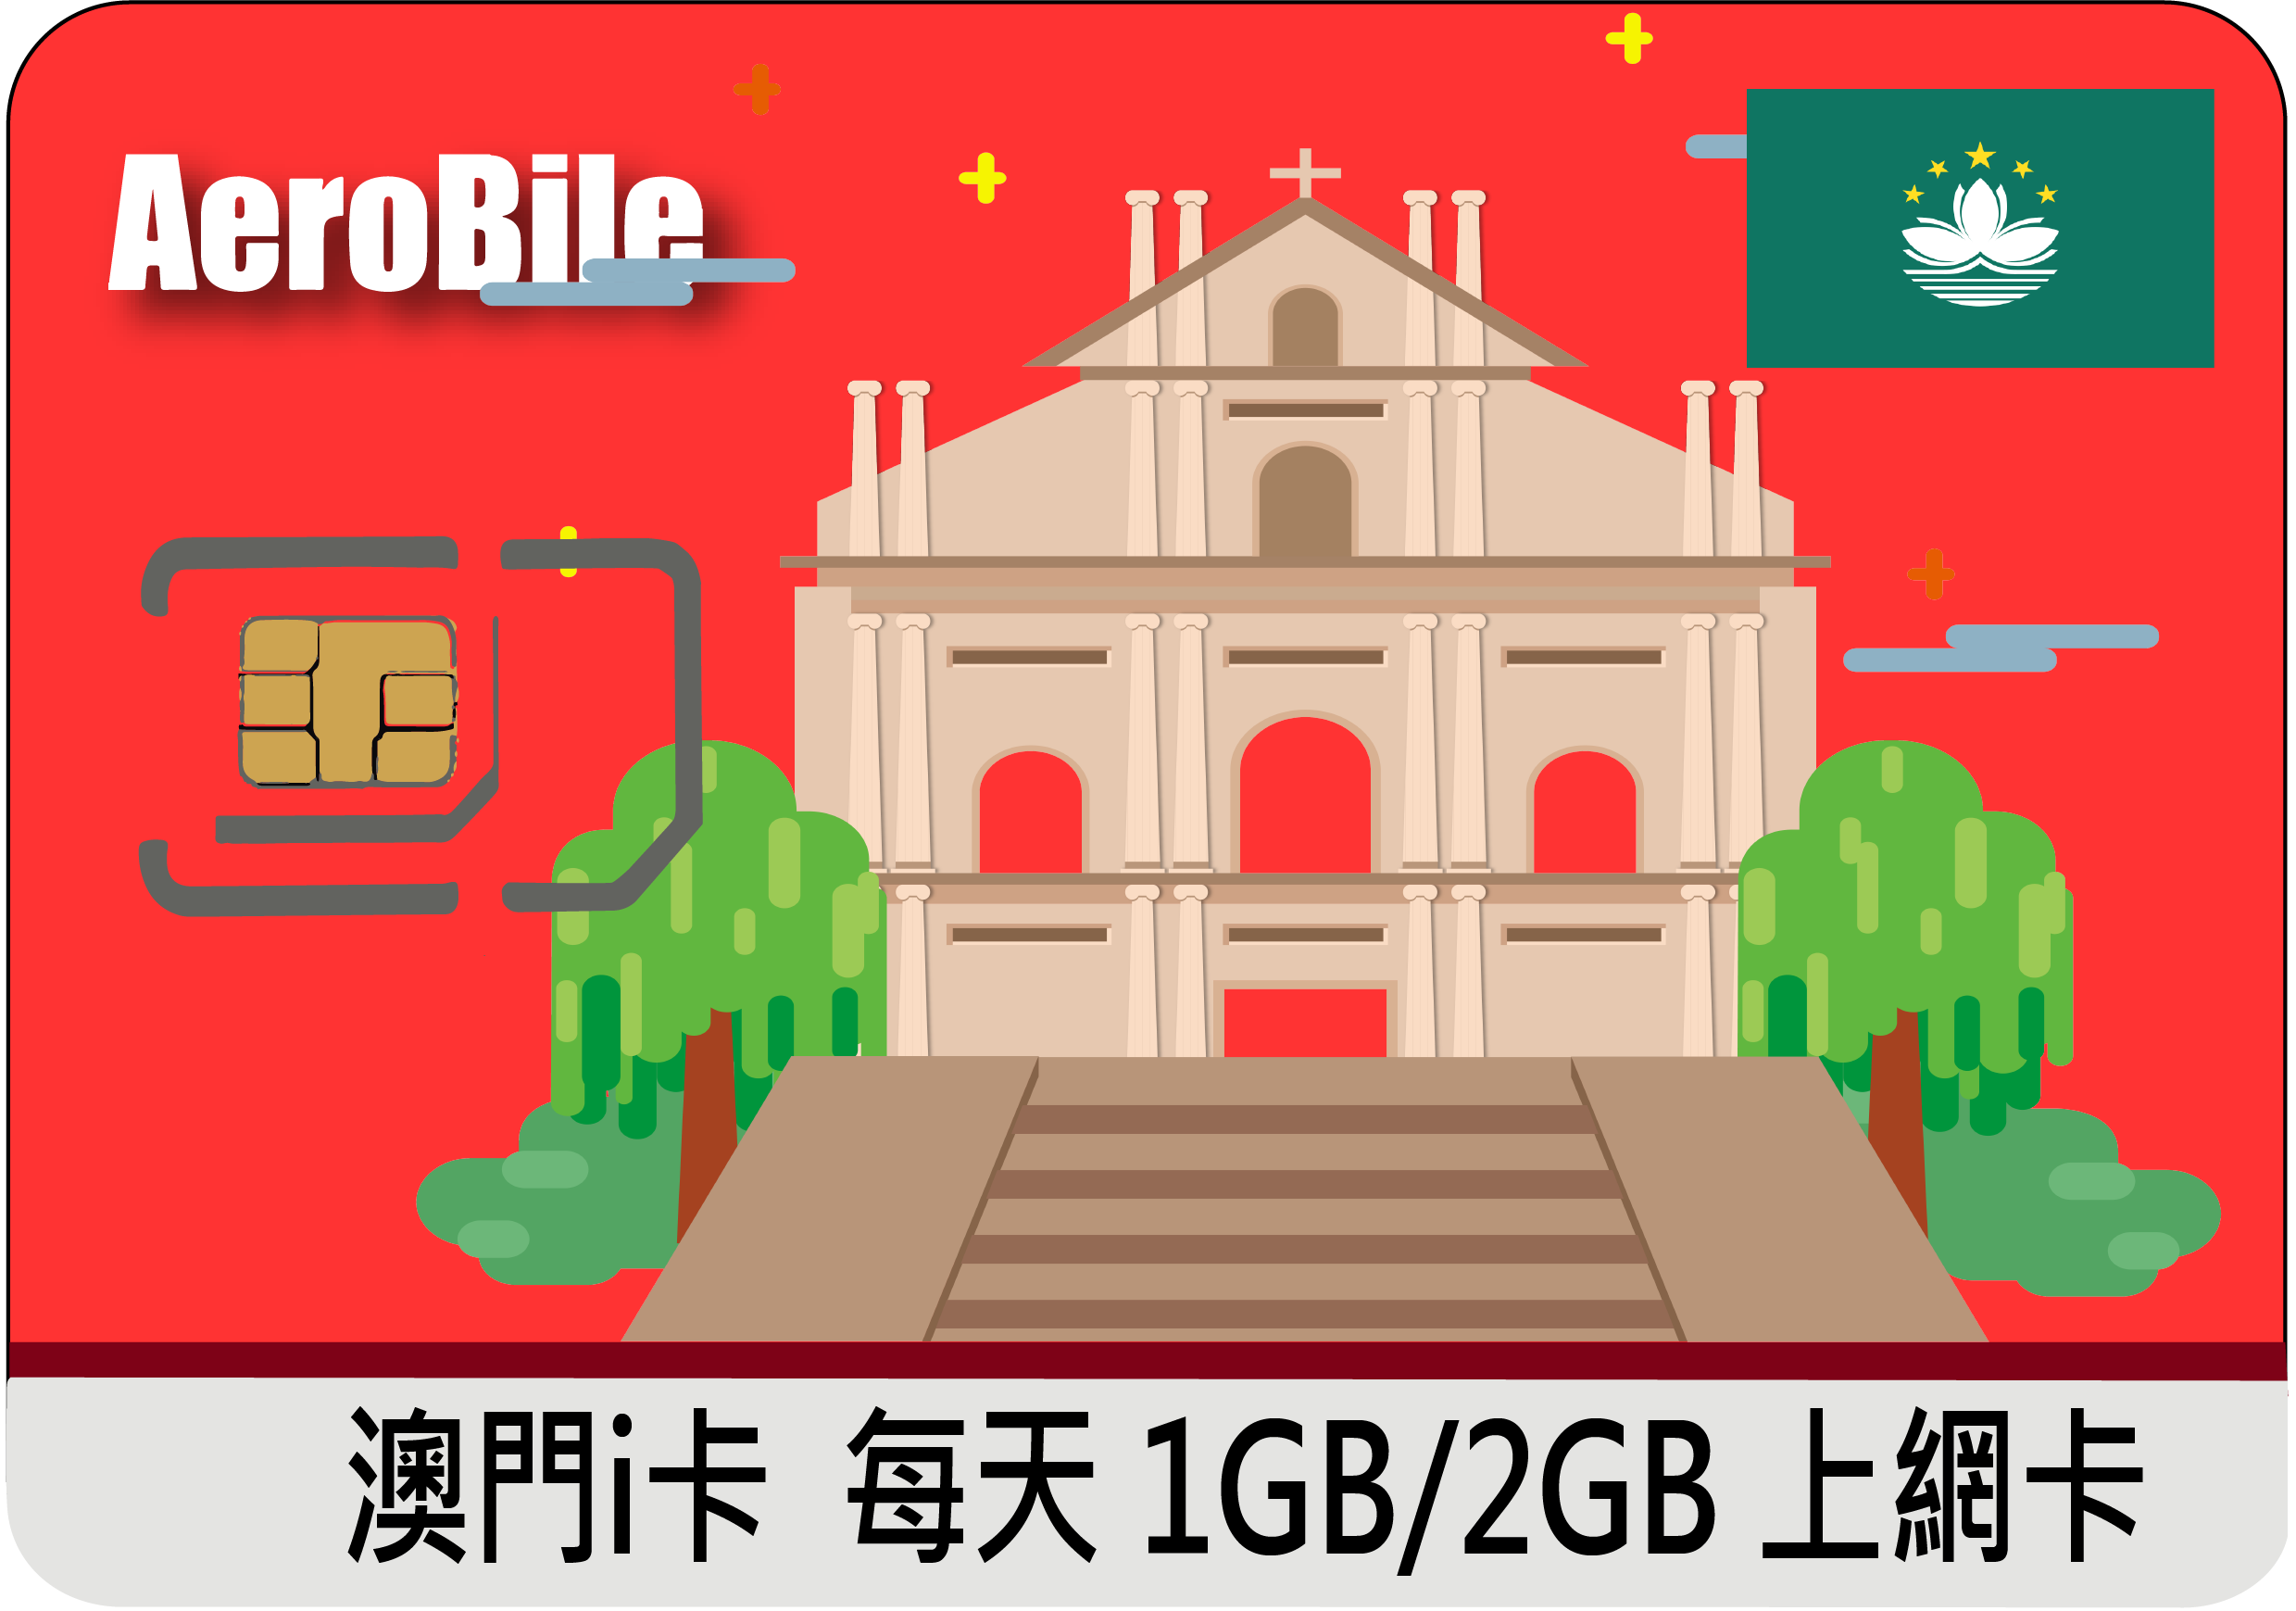 中國移動預付卡15天4GB 上網免翻牆